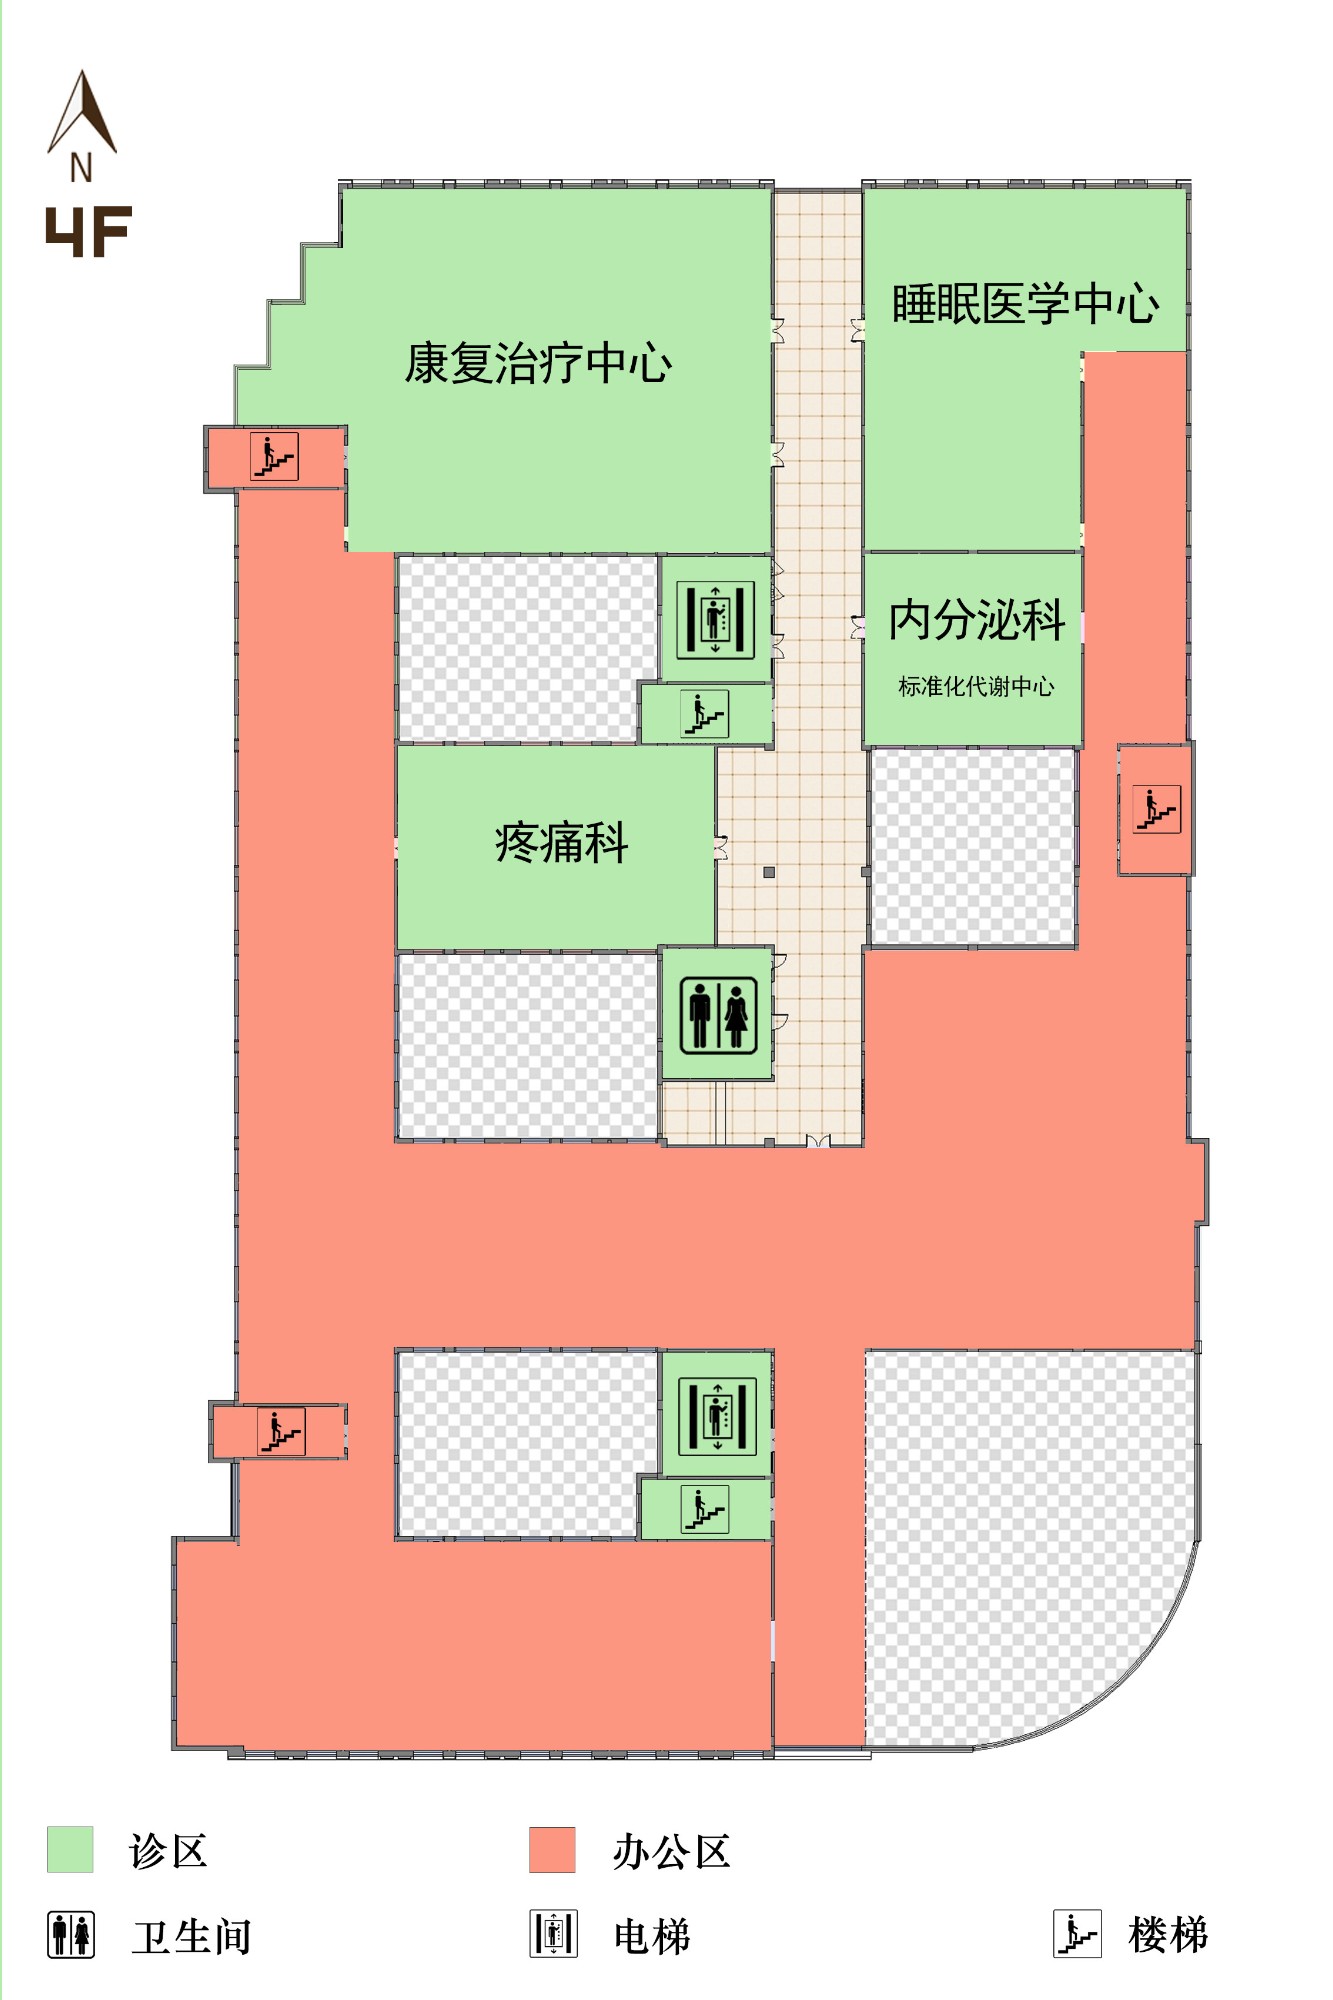 楼层布局-上海交大医学院图书馆